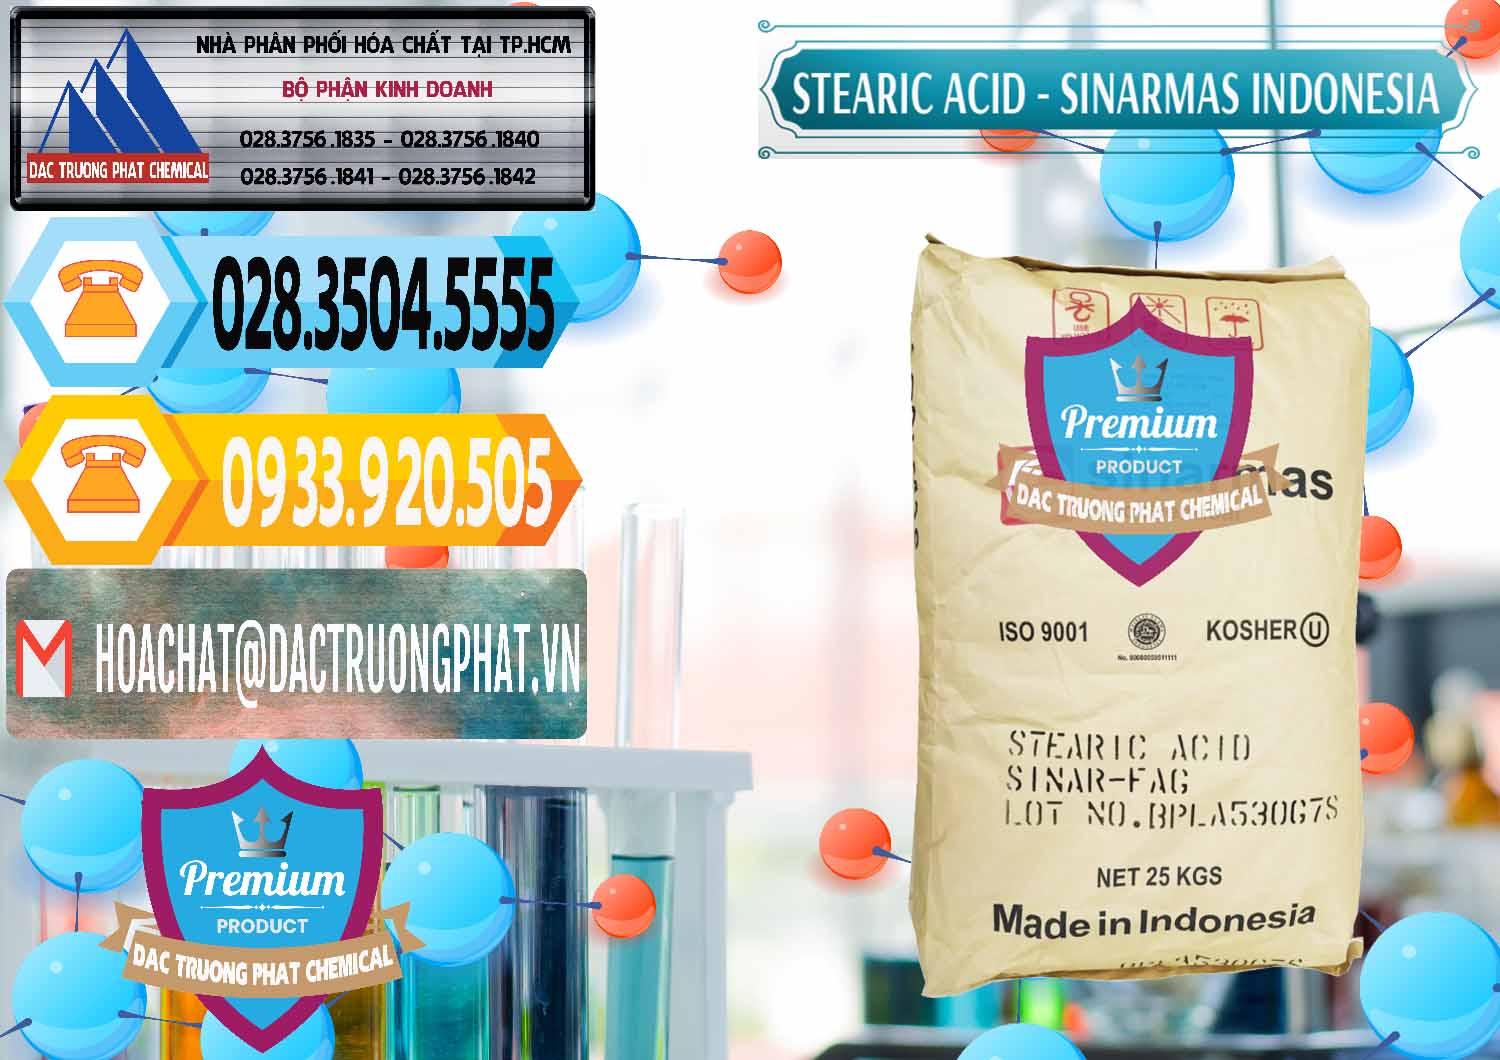 Cty cung ứng và bán Axit Stearic - Stearic Acid Sinarmas Indonesia - 0389 - Chuyên cung cấp & phân phối hóa chất tại TP.HCM - hoachattayrua.net